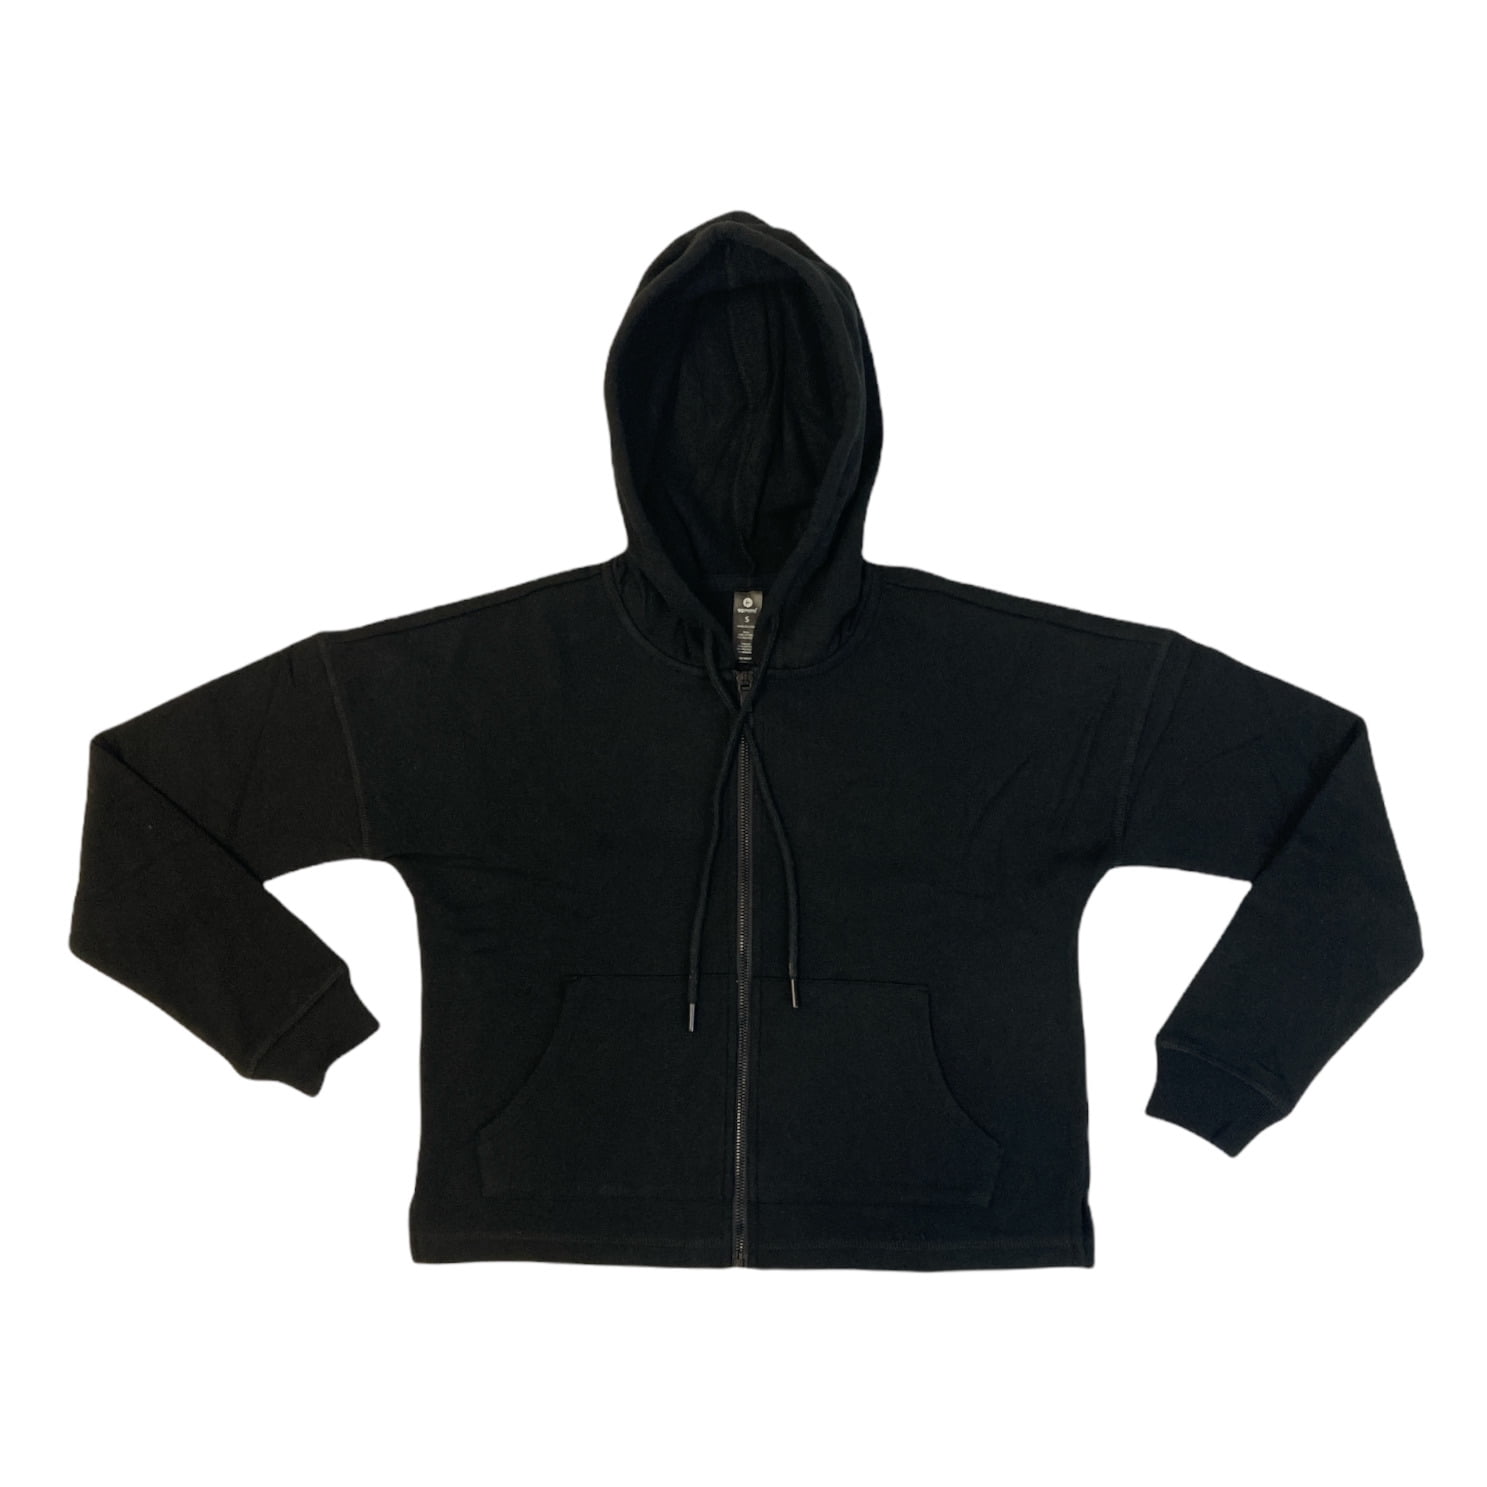 Jacket Fleece By 90 Degrees By Reflex Size: L